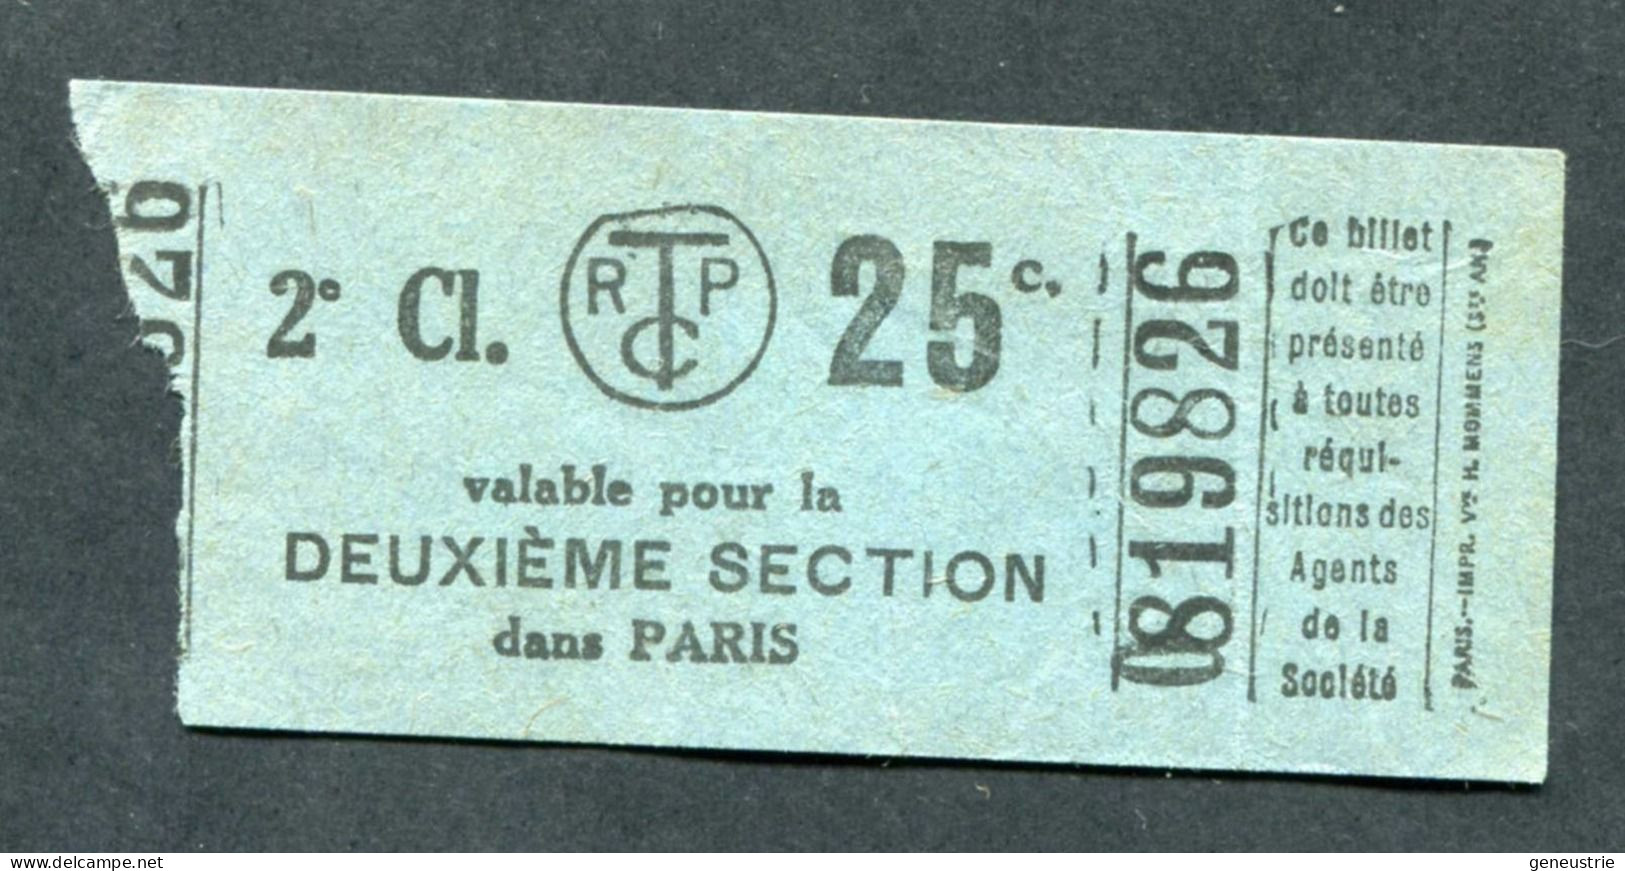 Ticket De Tramways Parisiens 1922-1924 (STCRP) 2e Classe 25c - Paris" Chemin De Fer - Tramway - Tram - Europe